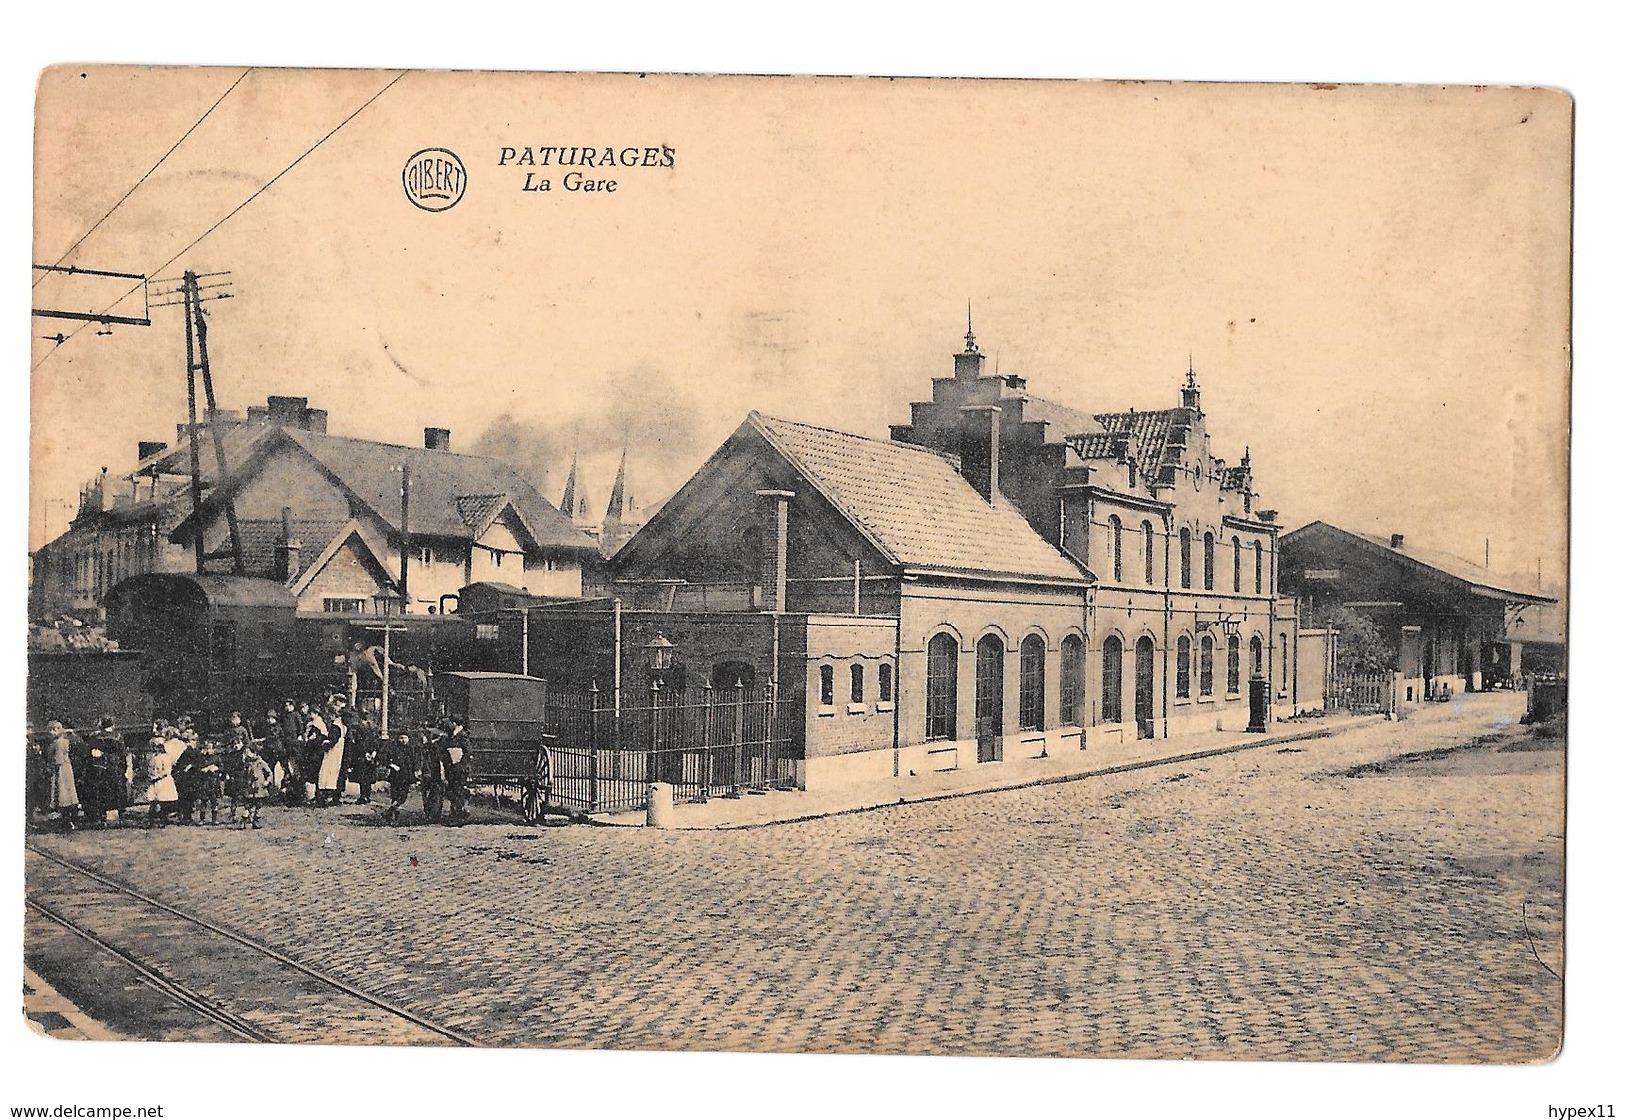 Paturages La Gare Albert Train Bon état 1923 édition Ballez Colmant - Colfontaine